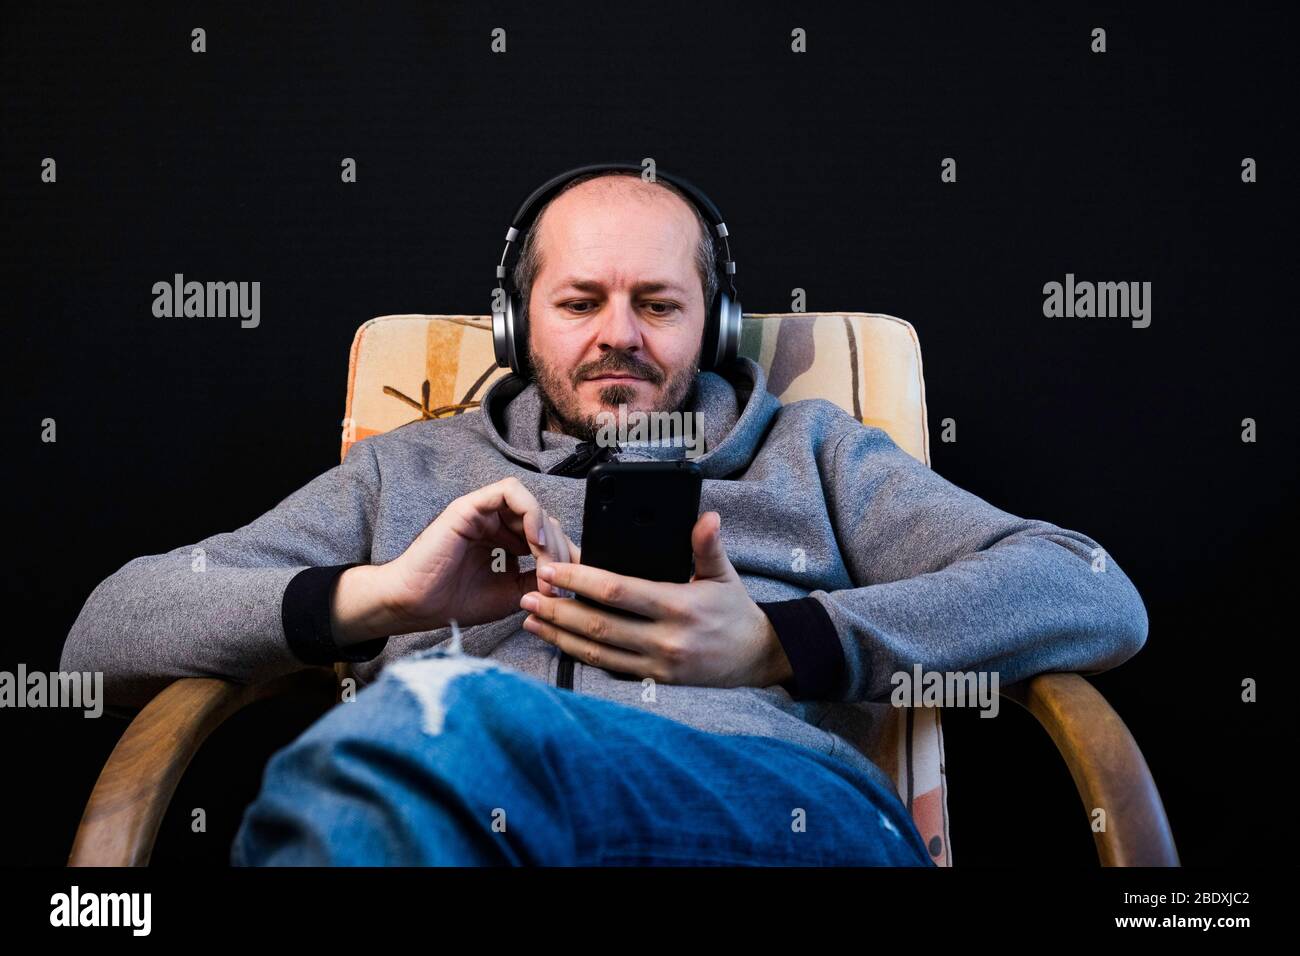 Homme barbu dans des vêtements décontractés hoodie assis dans une chaise avec casque, écoute de la musique Banque D'Images